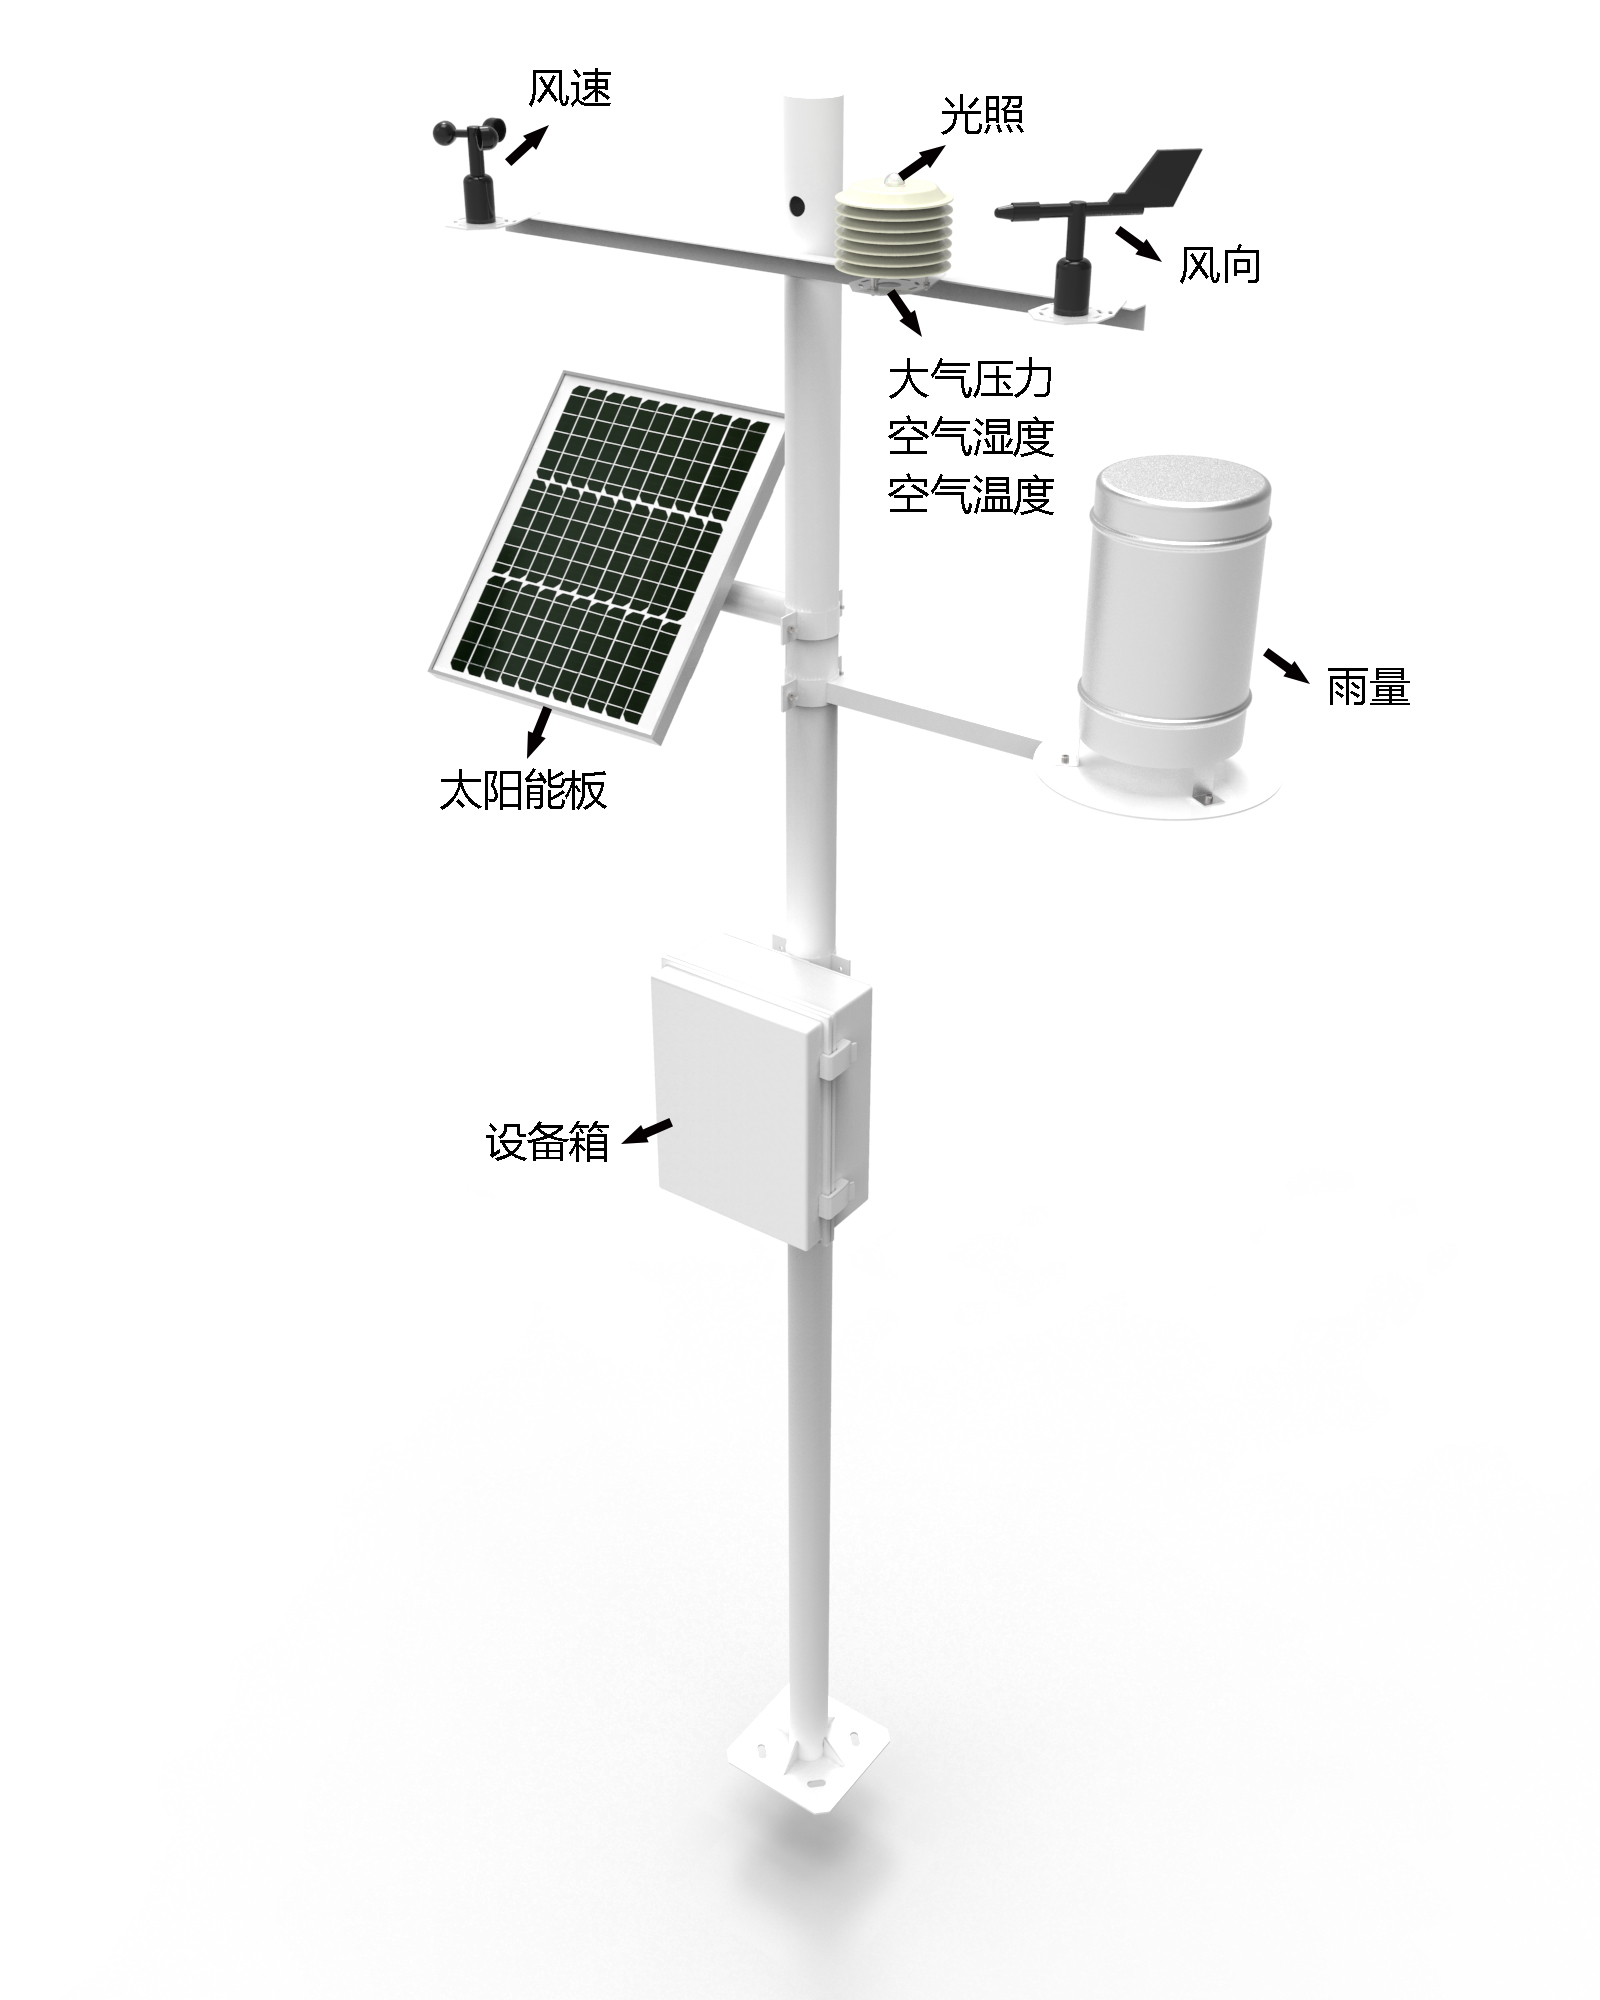 农业小型气象站产品结构图